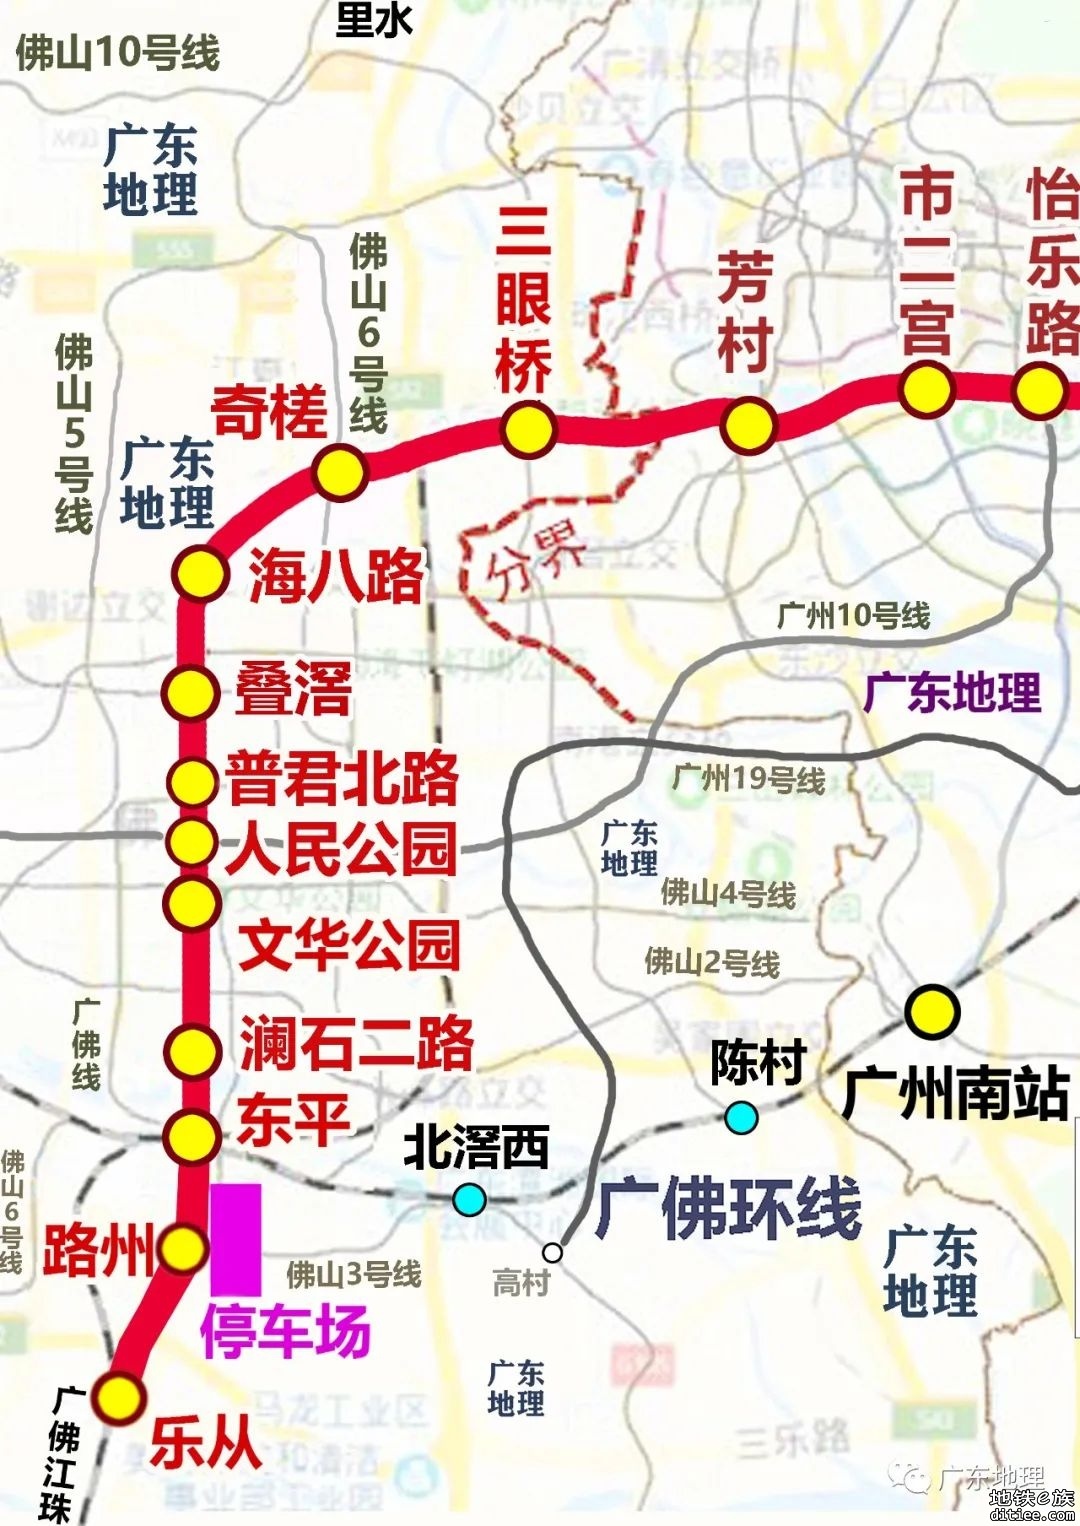 广州28号线佛山段最终站点来了